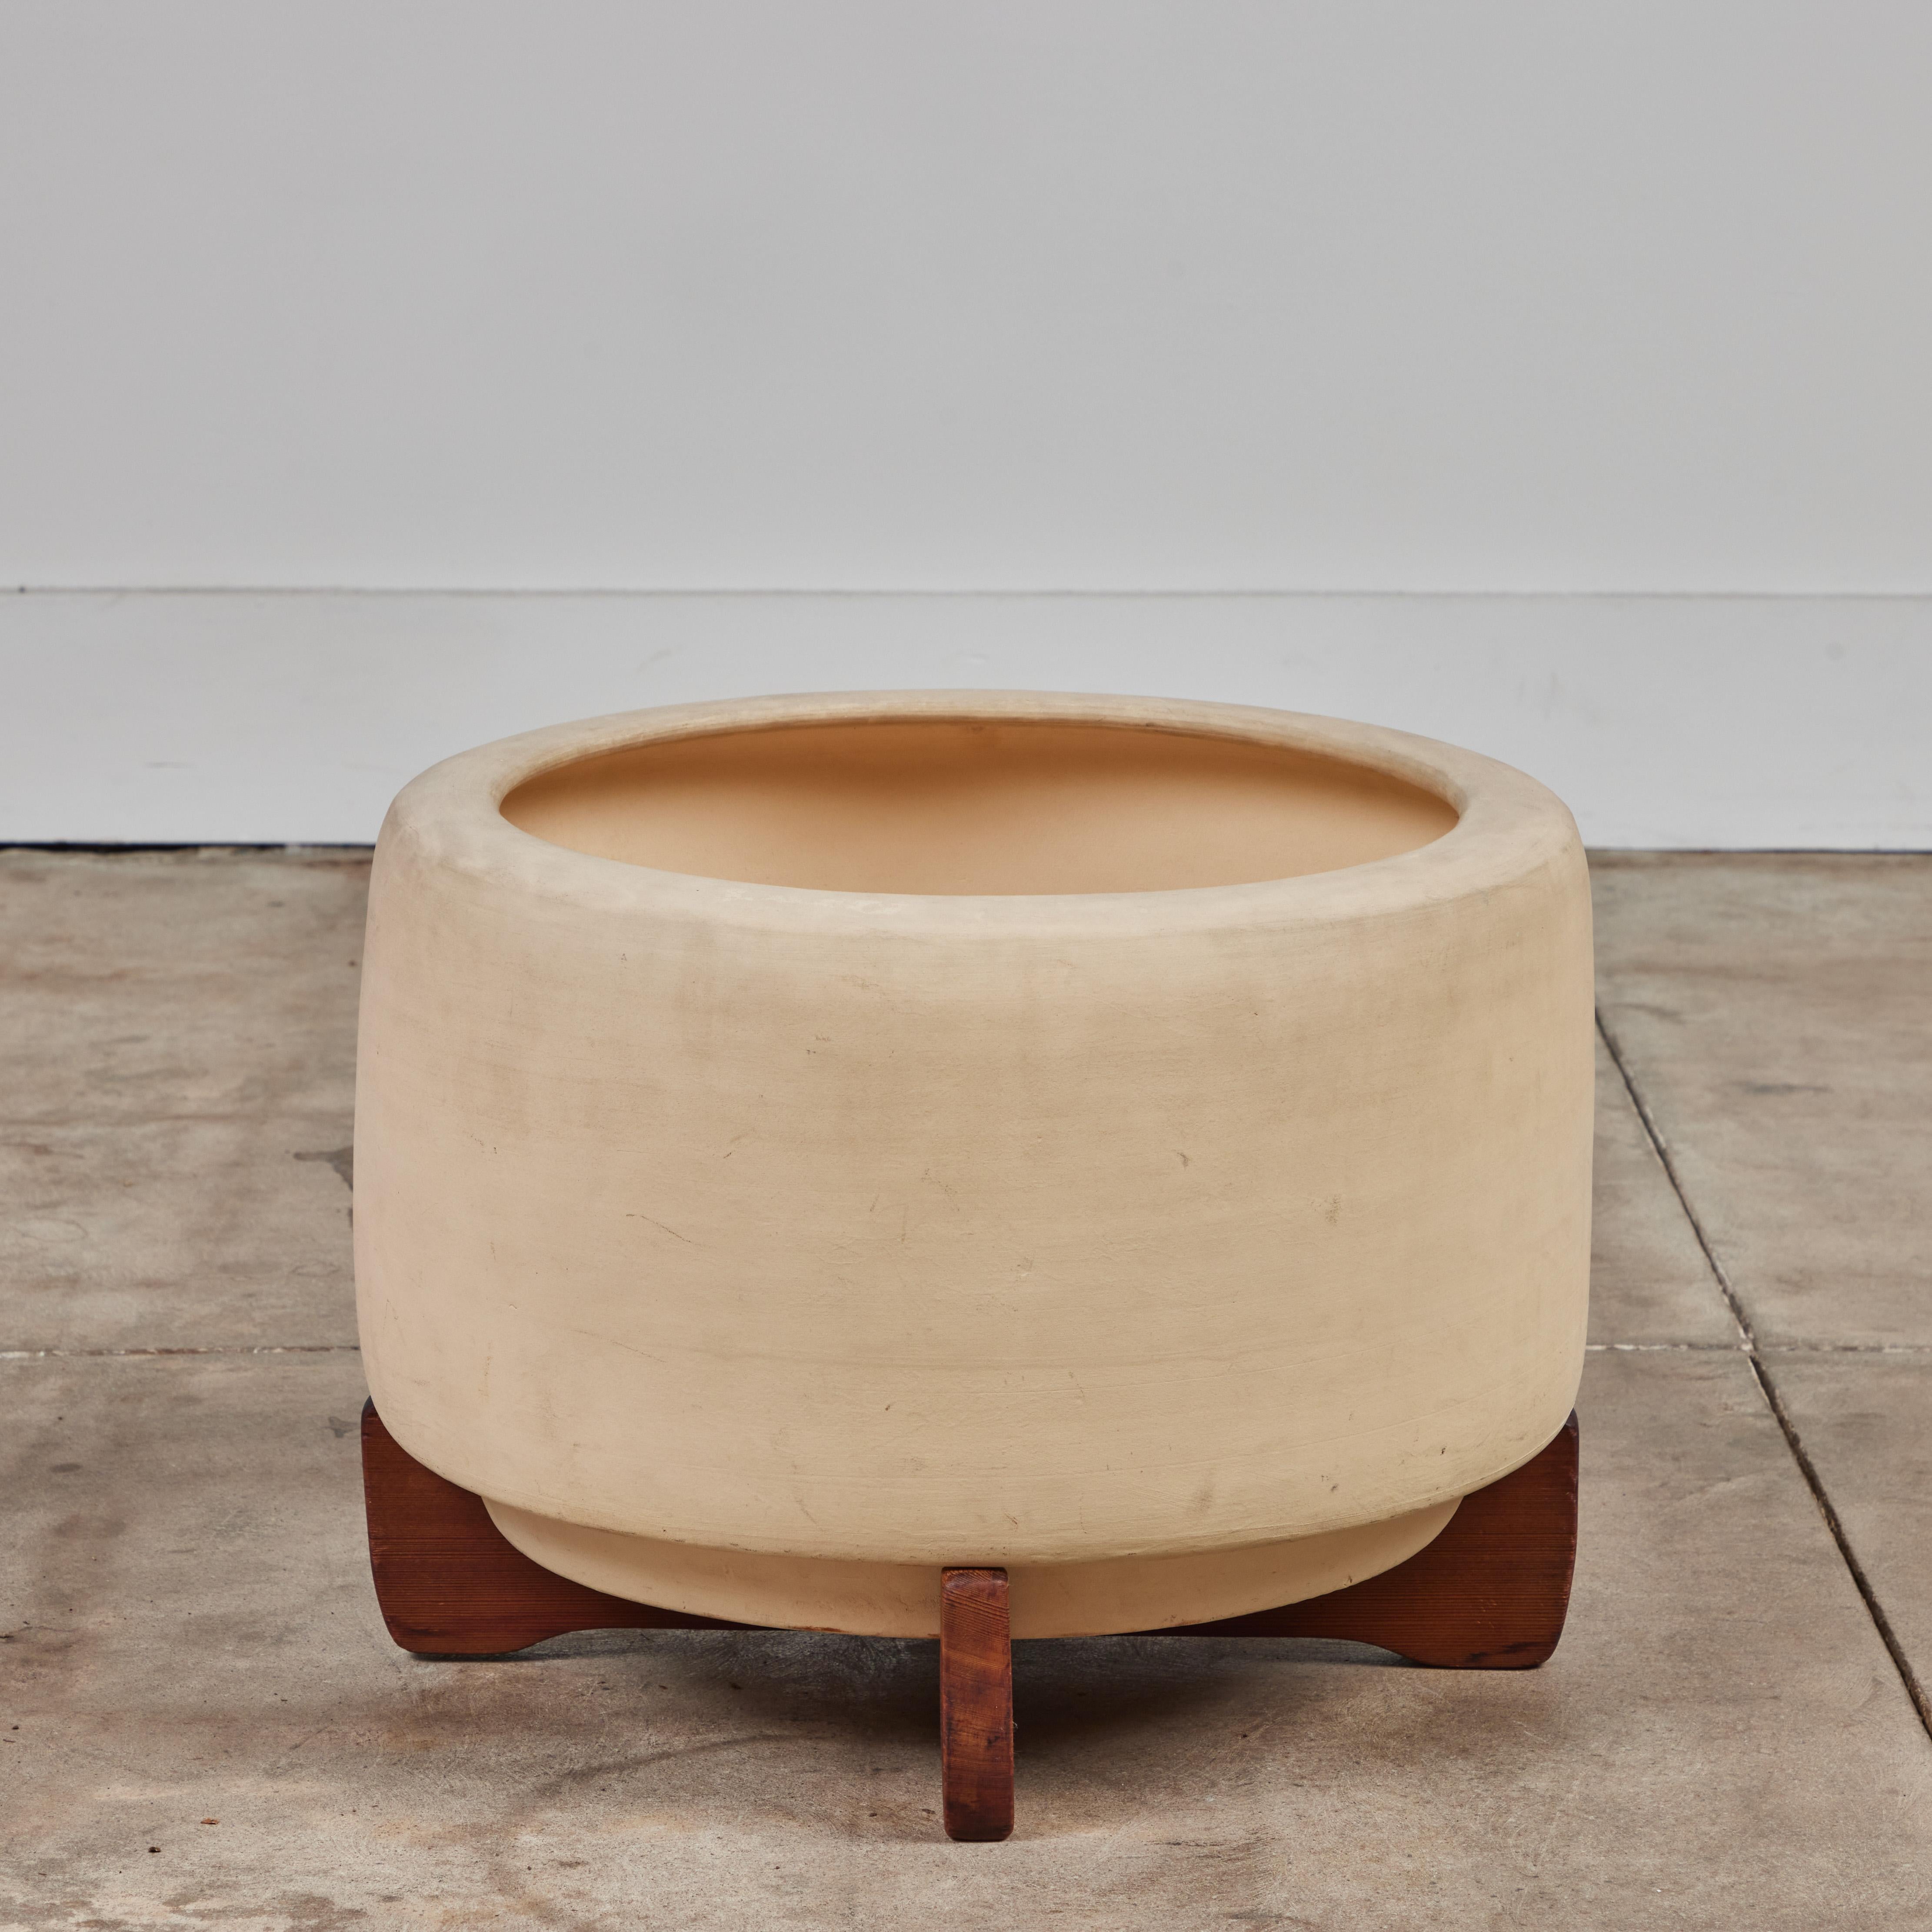 Pflanzgefäß aus Biskuit von John Follis für Architectural Pottery. Dieses Exemplar hat die Form einer Trommel mit einer abgerundeten Lippe, die sich am oberen Ende des Stücks nach innen wölbt. Es ruht auf einem originalen Holzkreuzsockel.
Das